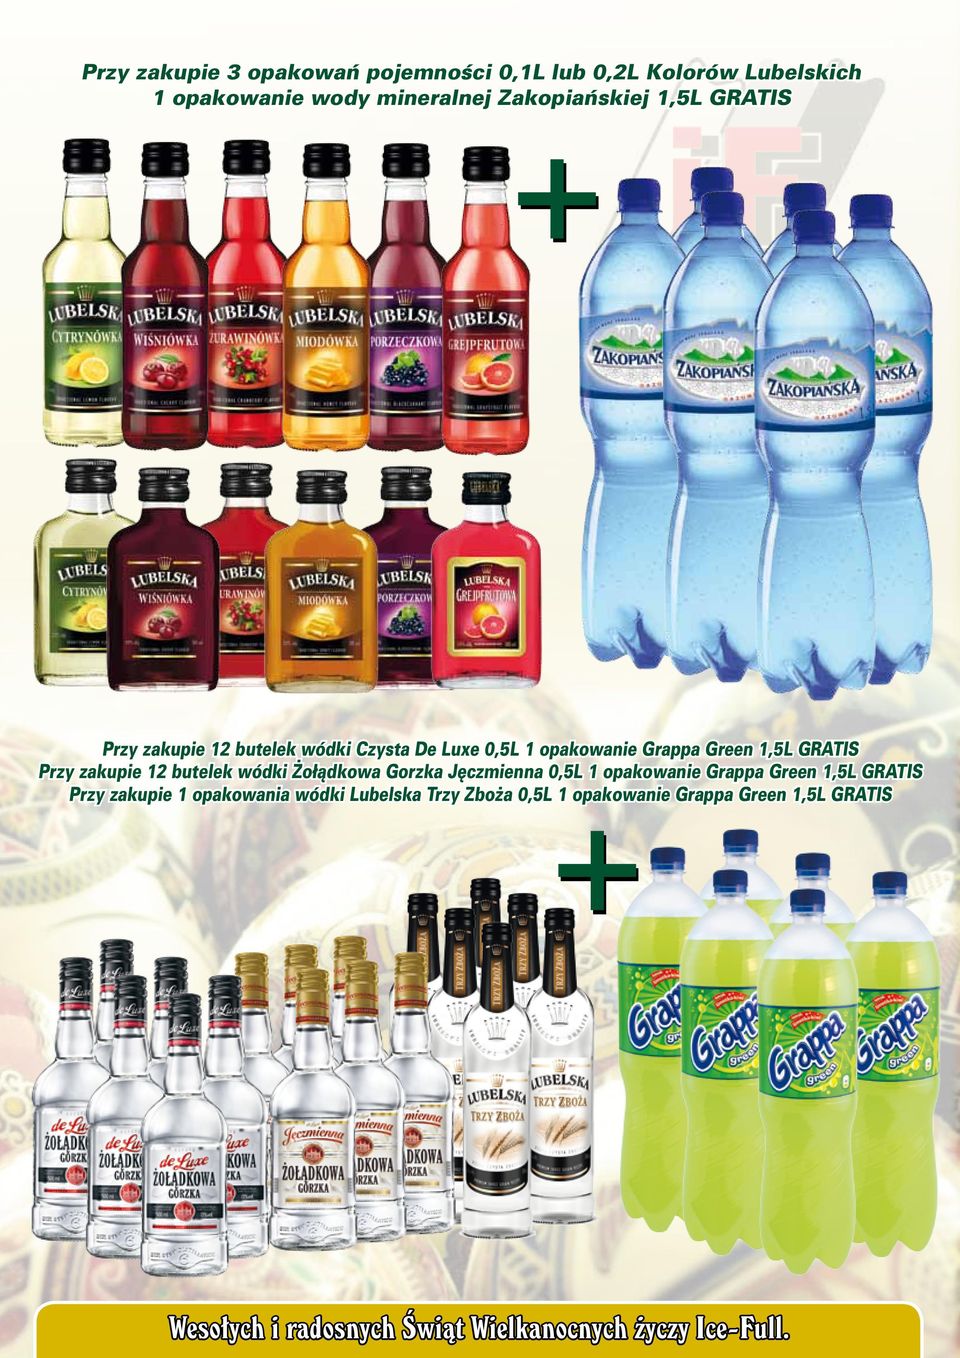 1,5L GRATIS Przy zakupie 12 butelek wódki Żołądkowa Gorzka Jęczmienna 0,5L 1 opakowanie Grappa Green